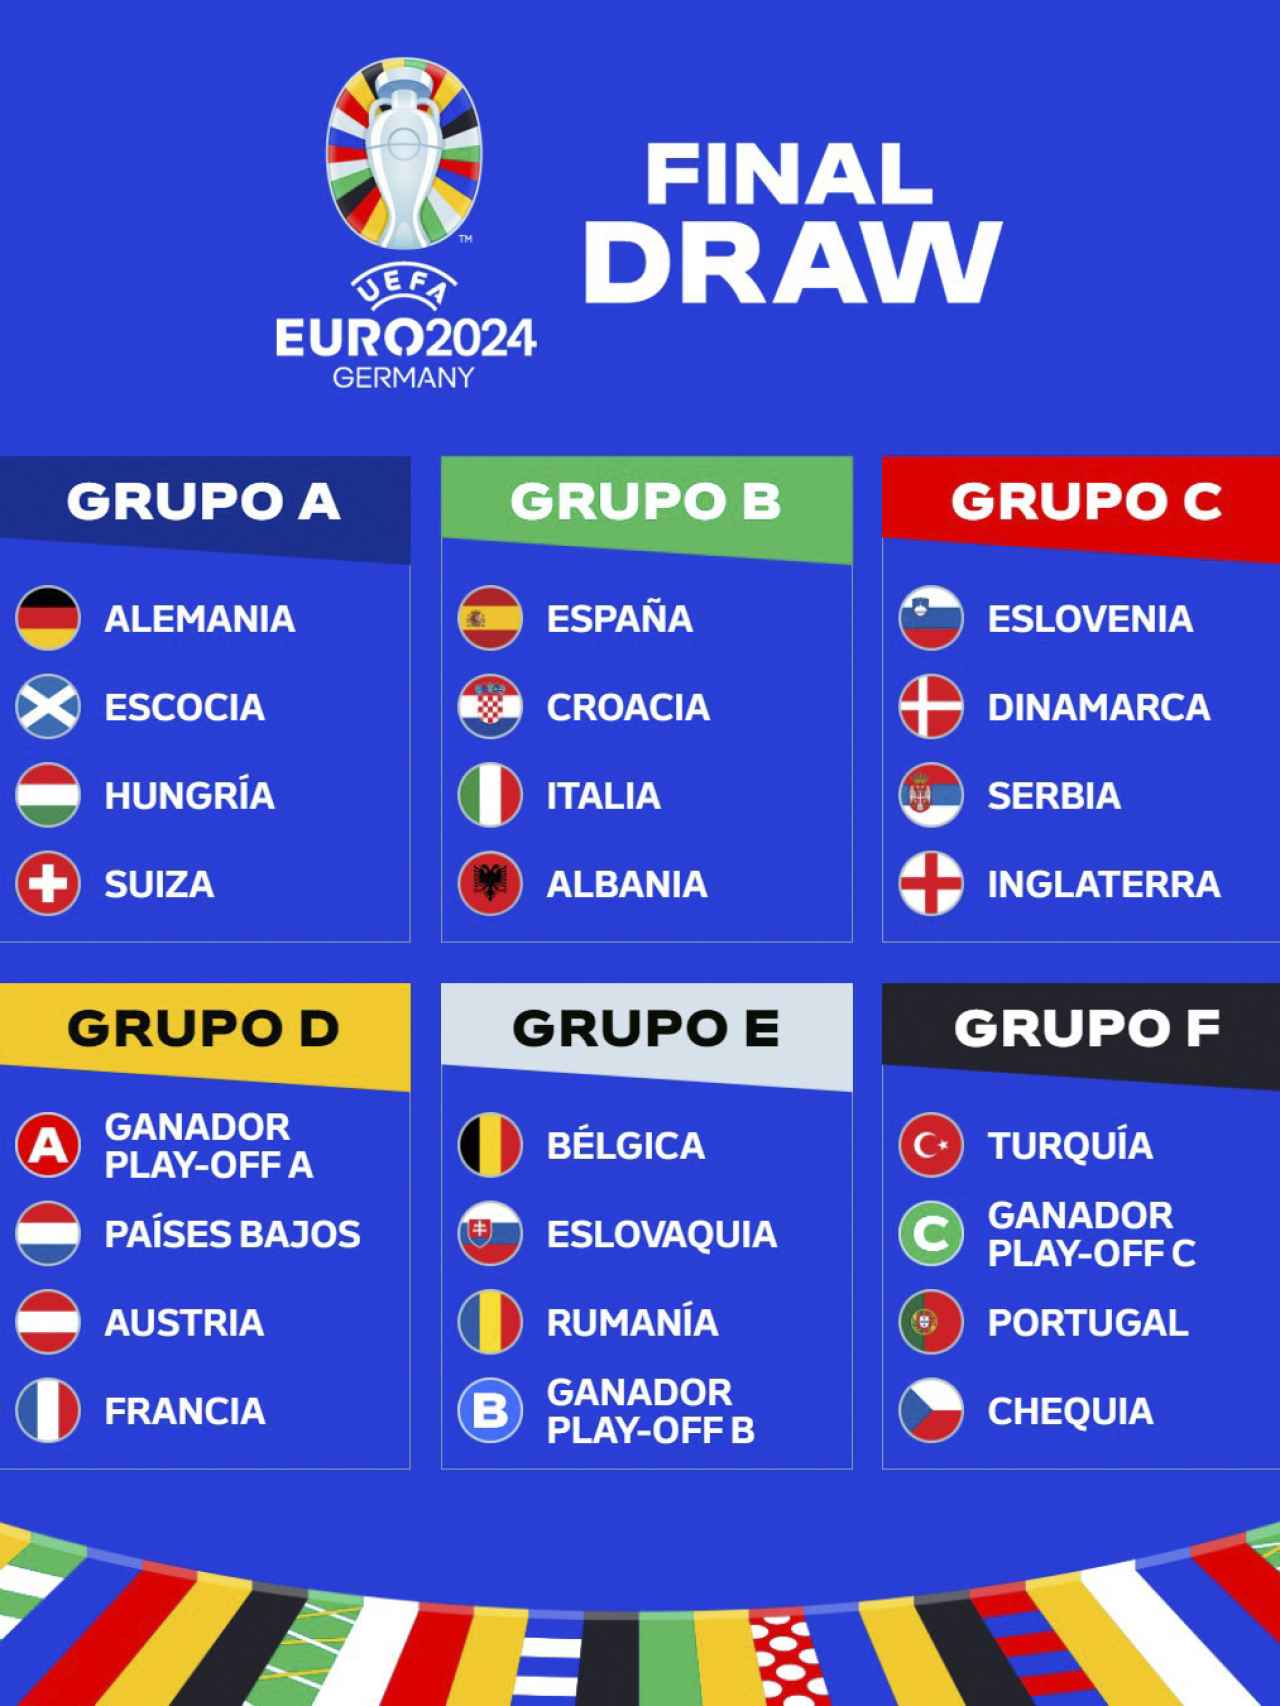 Así quedan distribuidas las selecciones en la fase de grupos de la Eurocopa 2024